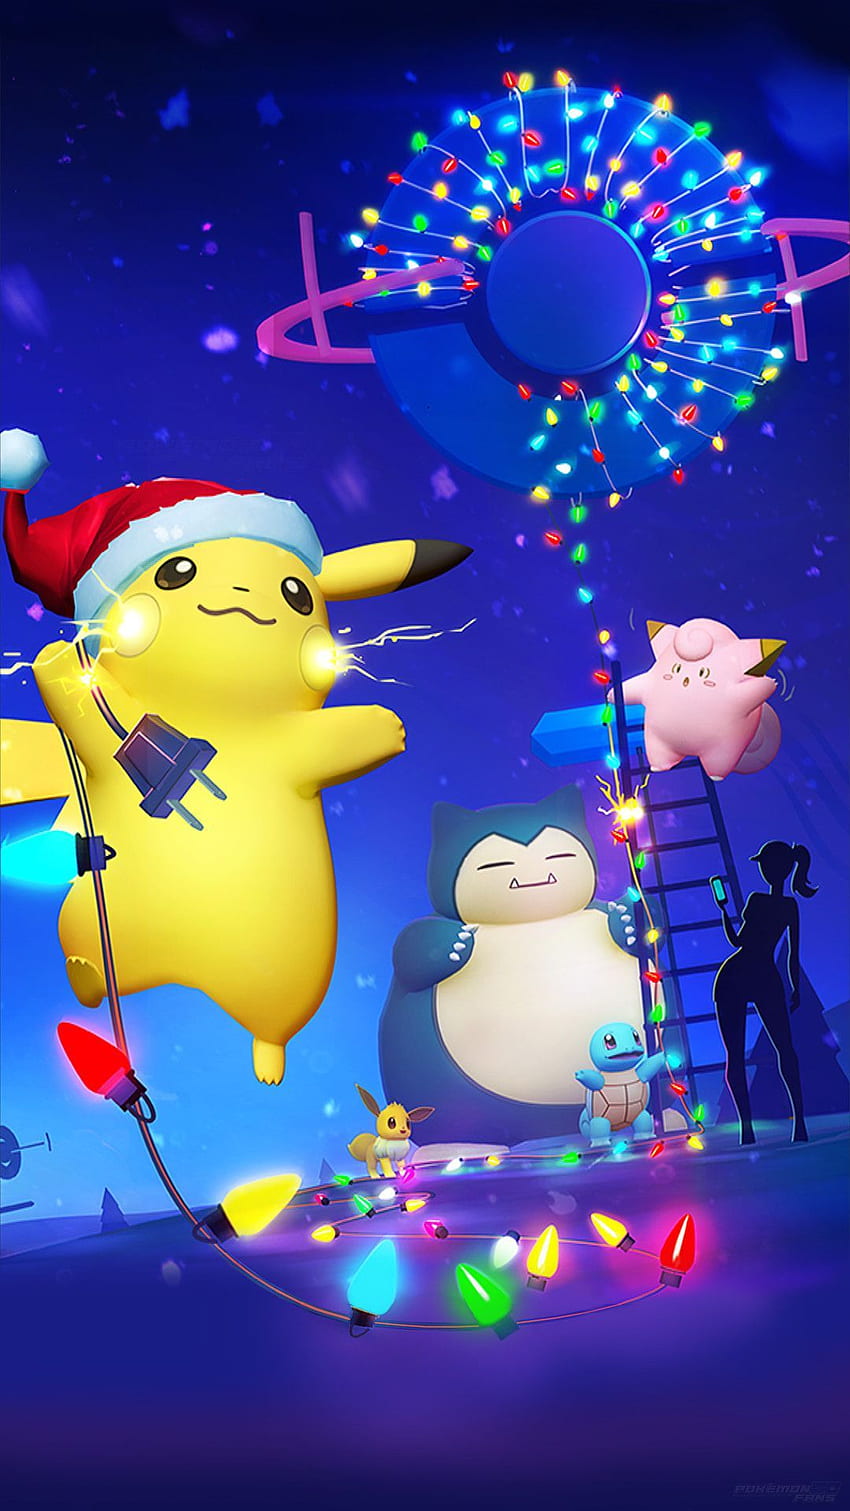 Bạn đang tìm kiếm một hình nền Giáng Sinh đáng yêu và đầy cảm hứng? Hãy xem ngay bộ sưu tập hình nền Pokemon Giáng Sinh đáng yêu và dễ thương nhất tại đây! Hình ảnh các Pokemon trong bộ trang phục Giáng Sinh xinh xắn chắc chắn sẽ làm tăng sự mong đợi cho mùa lễ hội sắp tới.